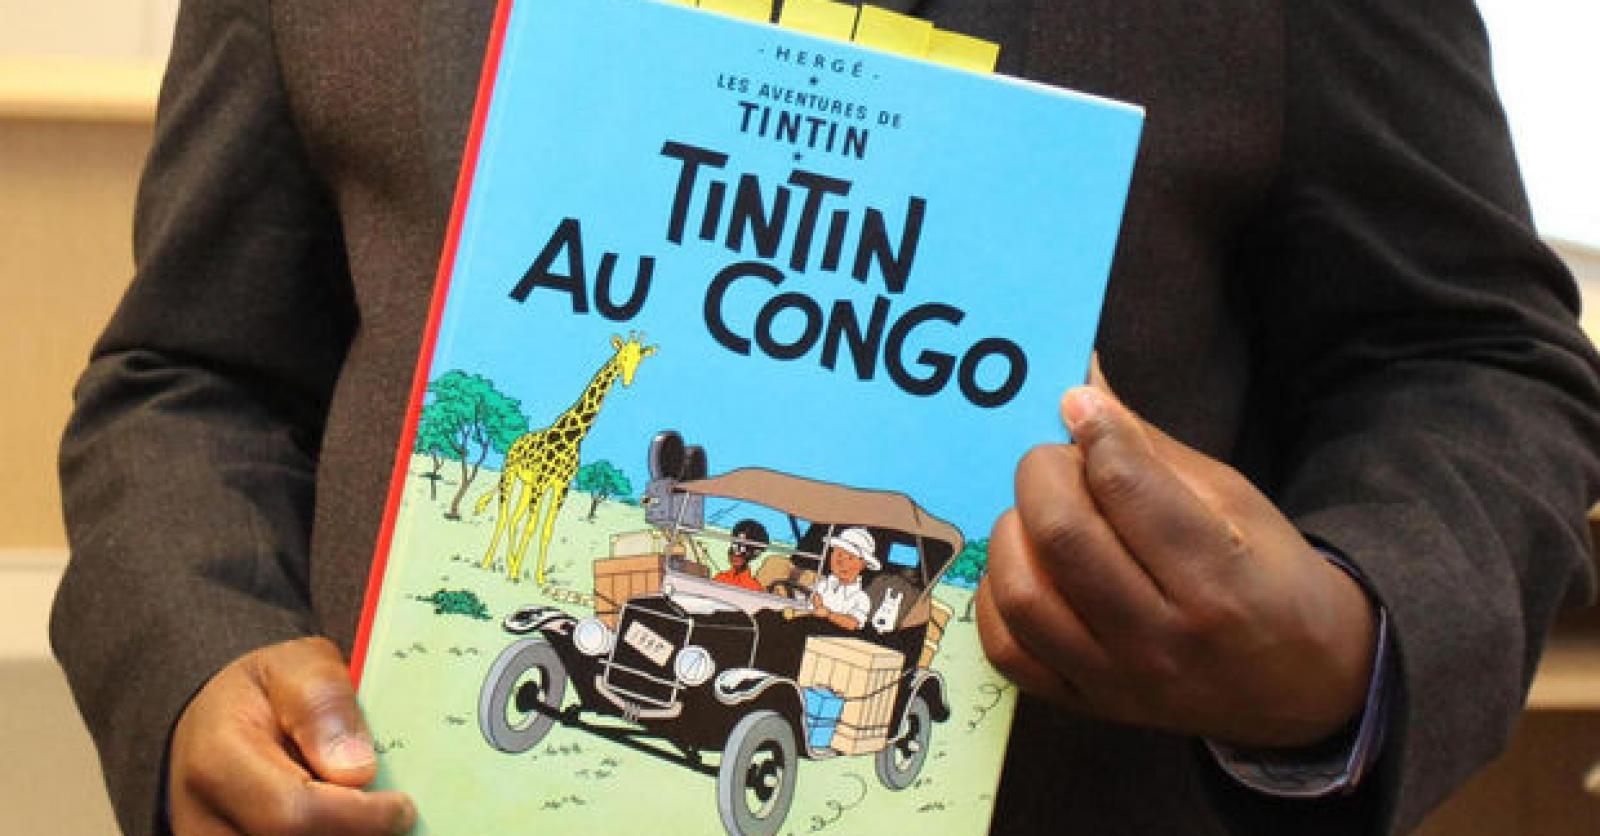 Pas de racisme dans Tintin au Congo, selon la justice belge